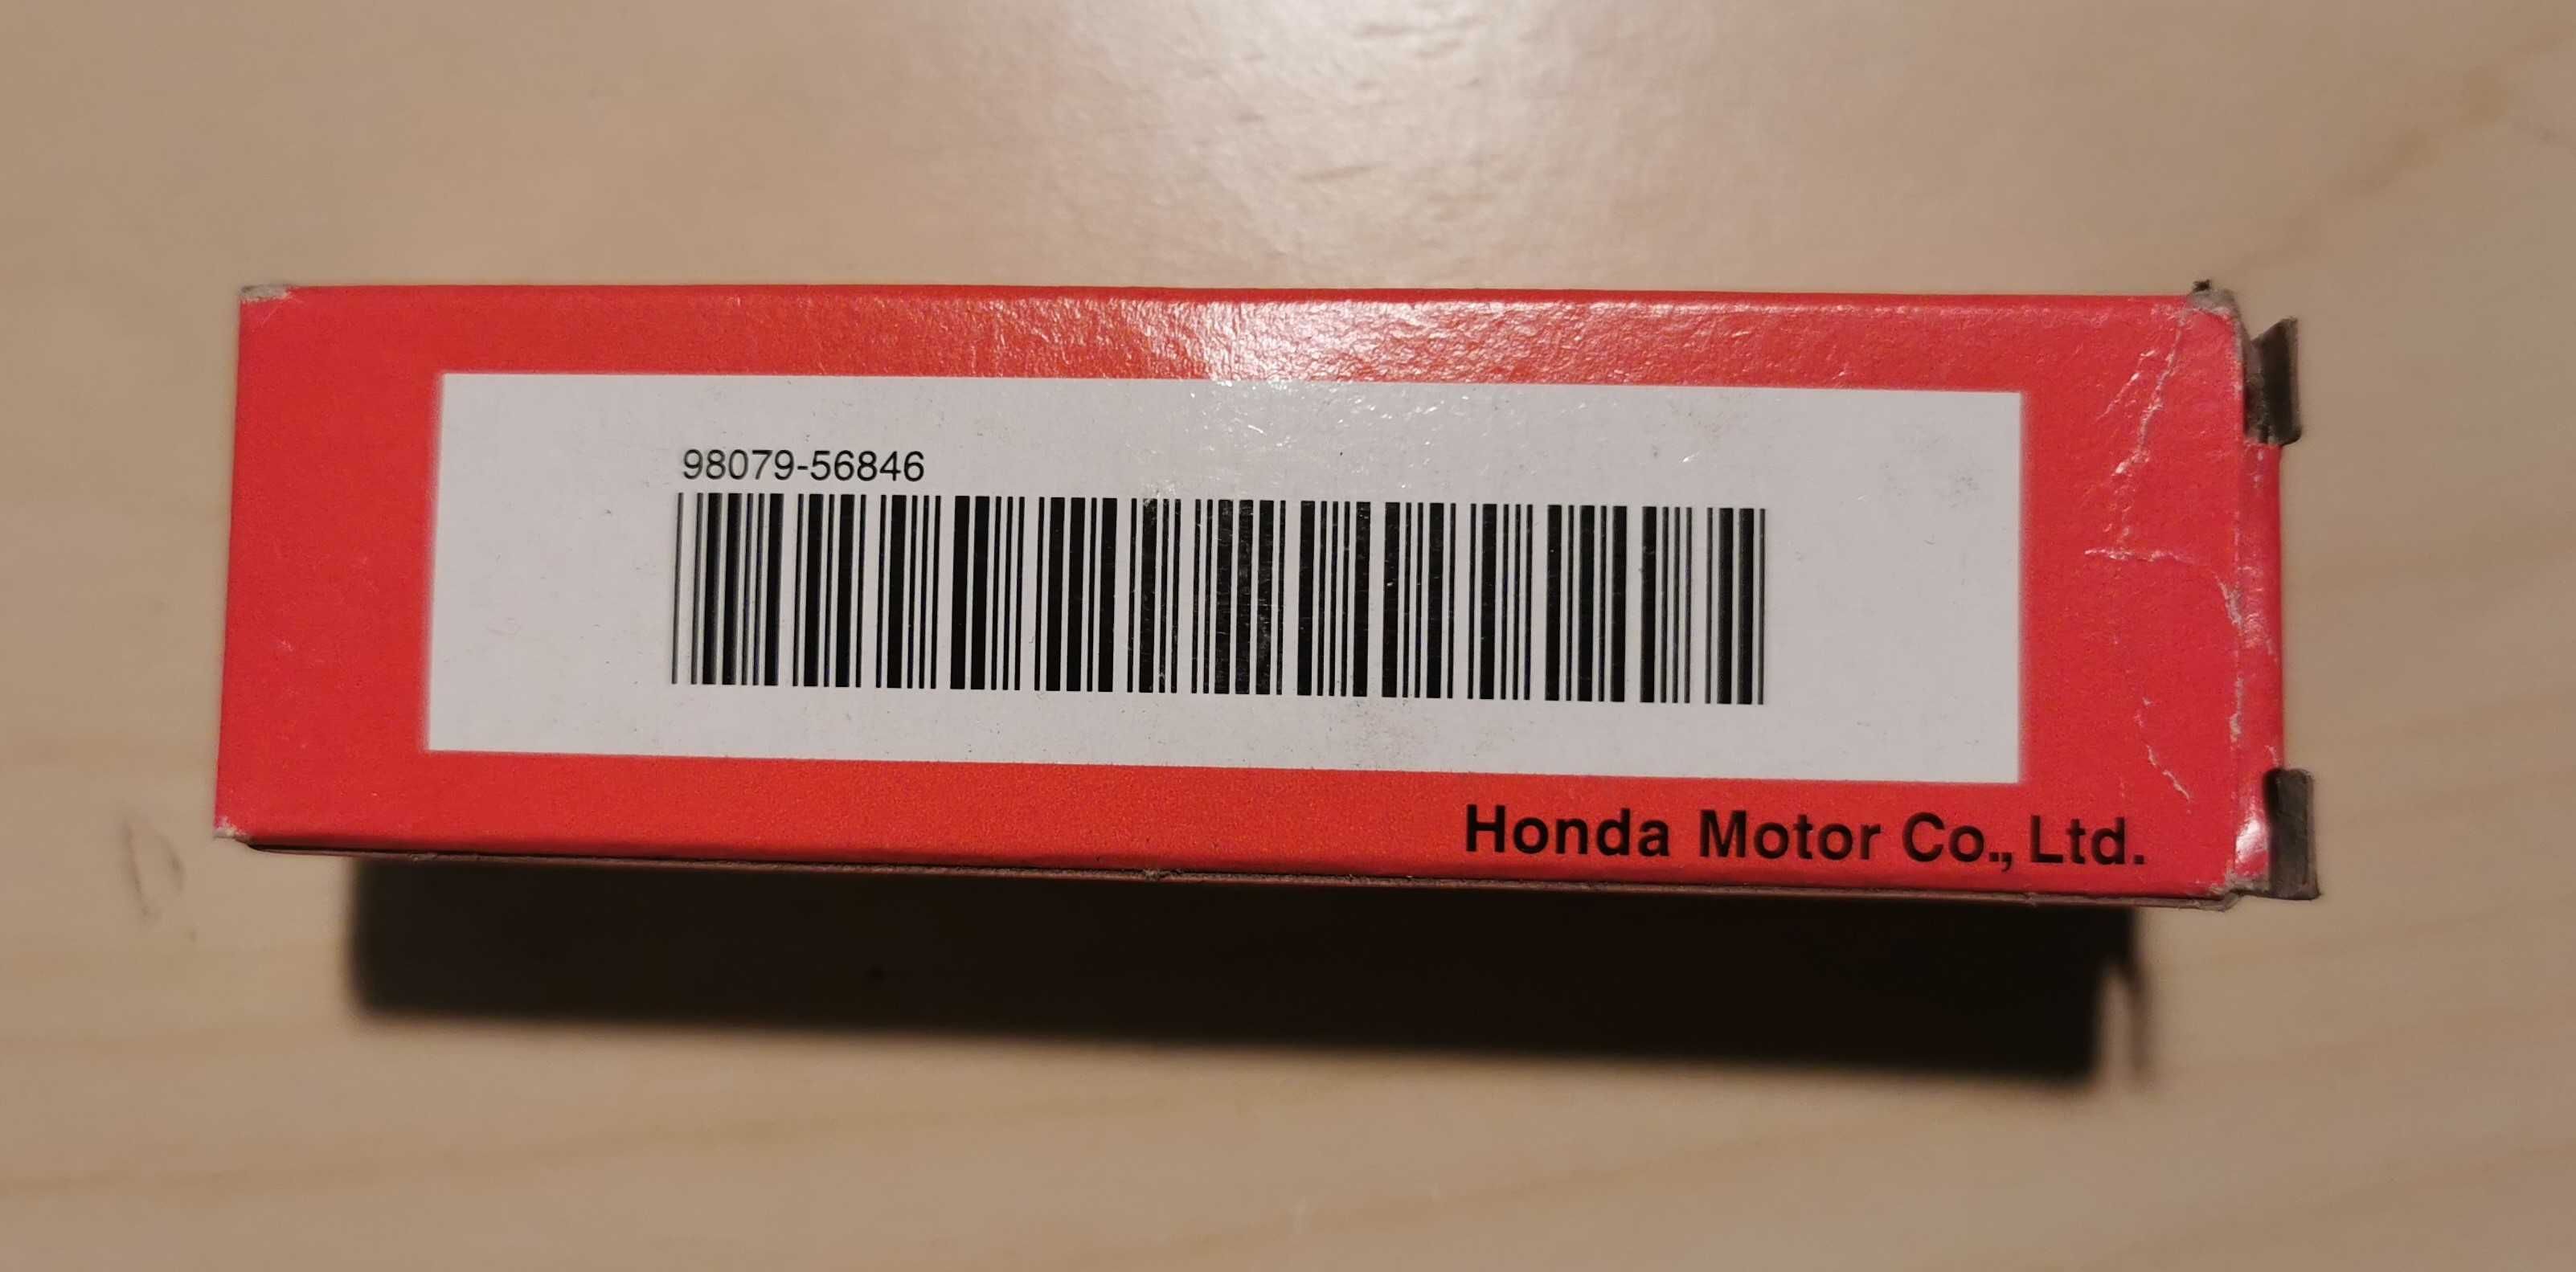 Filtr powietrza kosiarki Honda GC GCV, świeca zapłonowa oryginał Japan